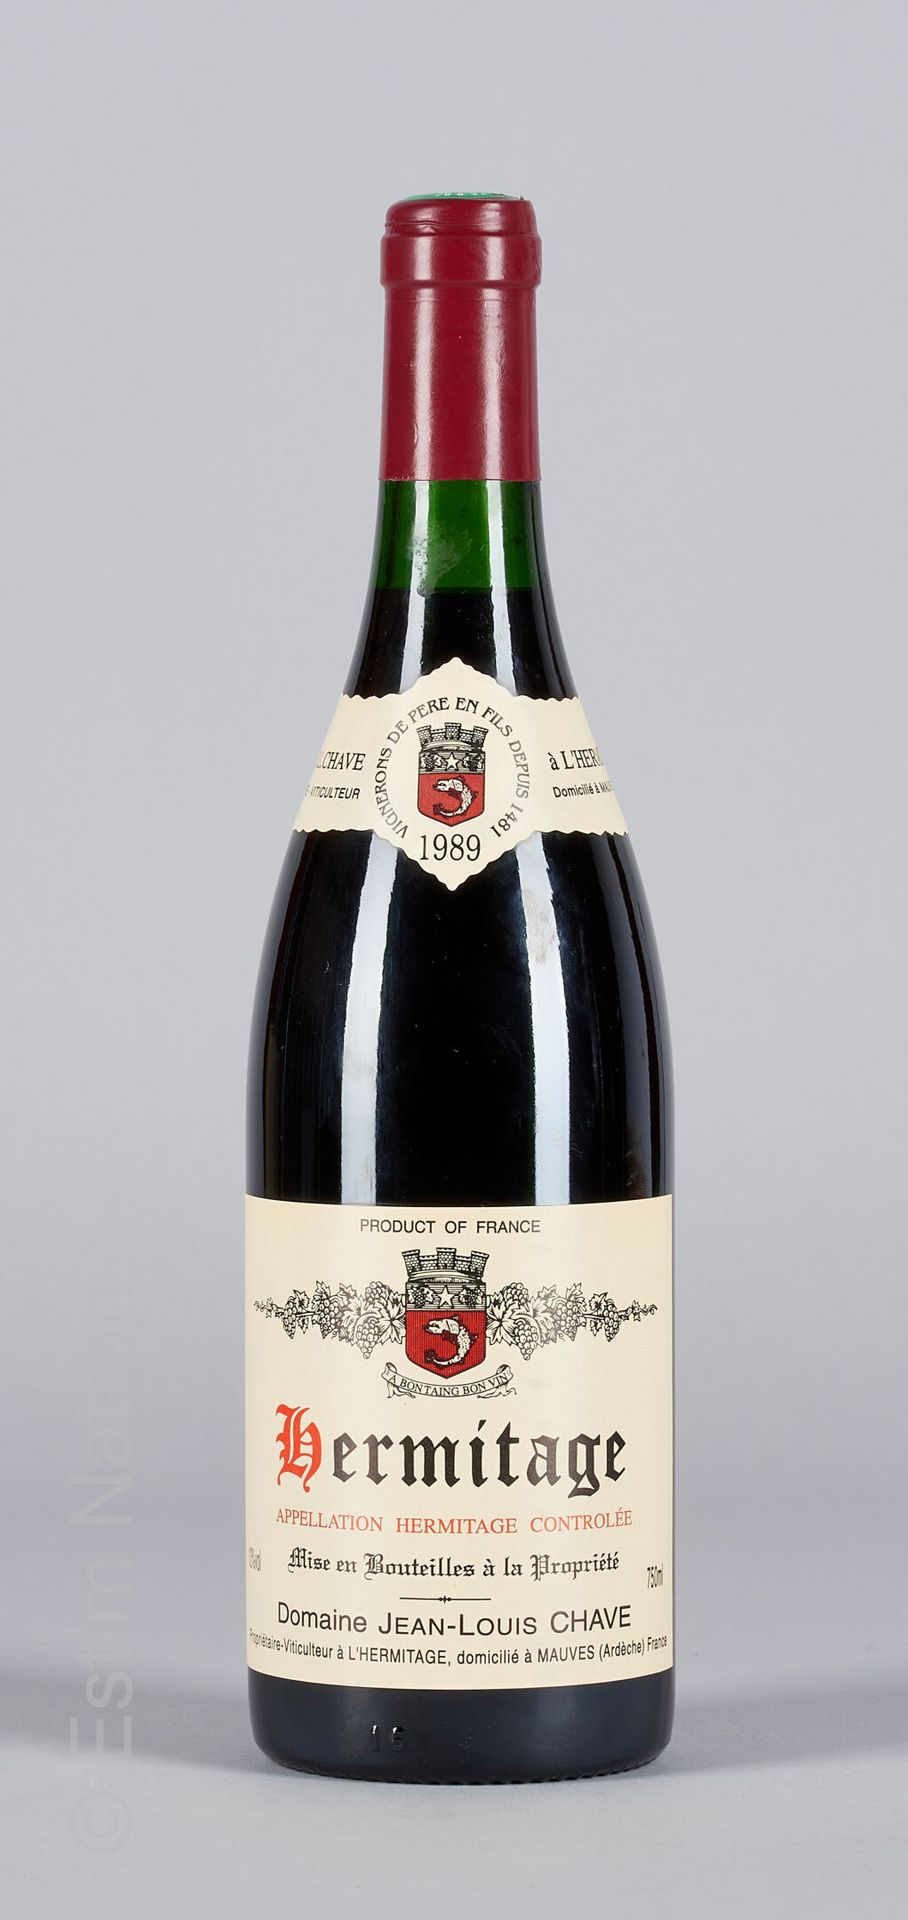 HERMITAGE ROUGE HERMITAGE 1989 Jean-Louis Chave 1瓶

(N. 2 cm, C. 胶囊顶部有非常轻微的滴落痕迹)